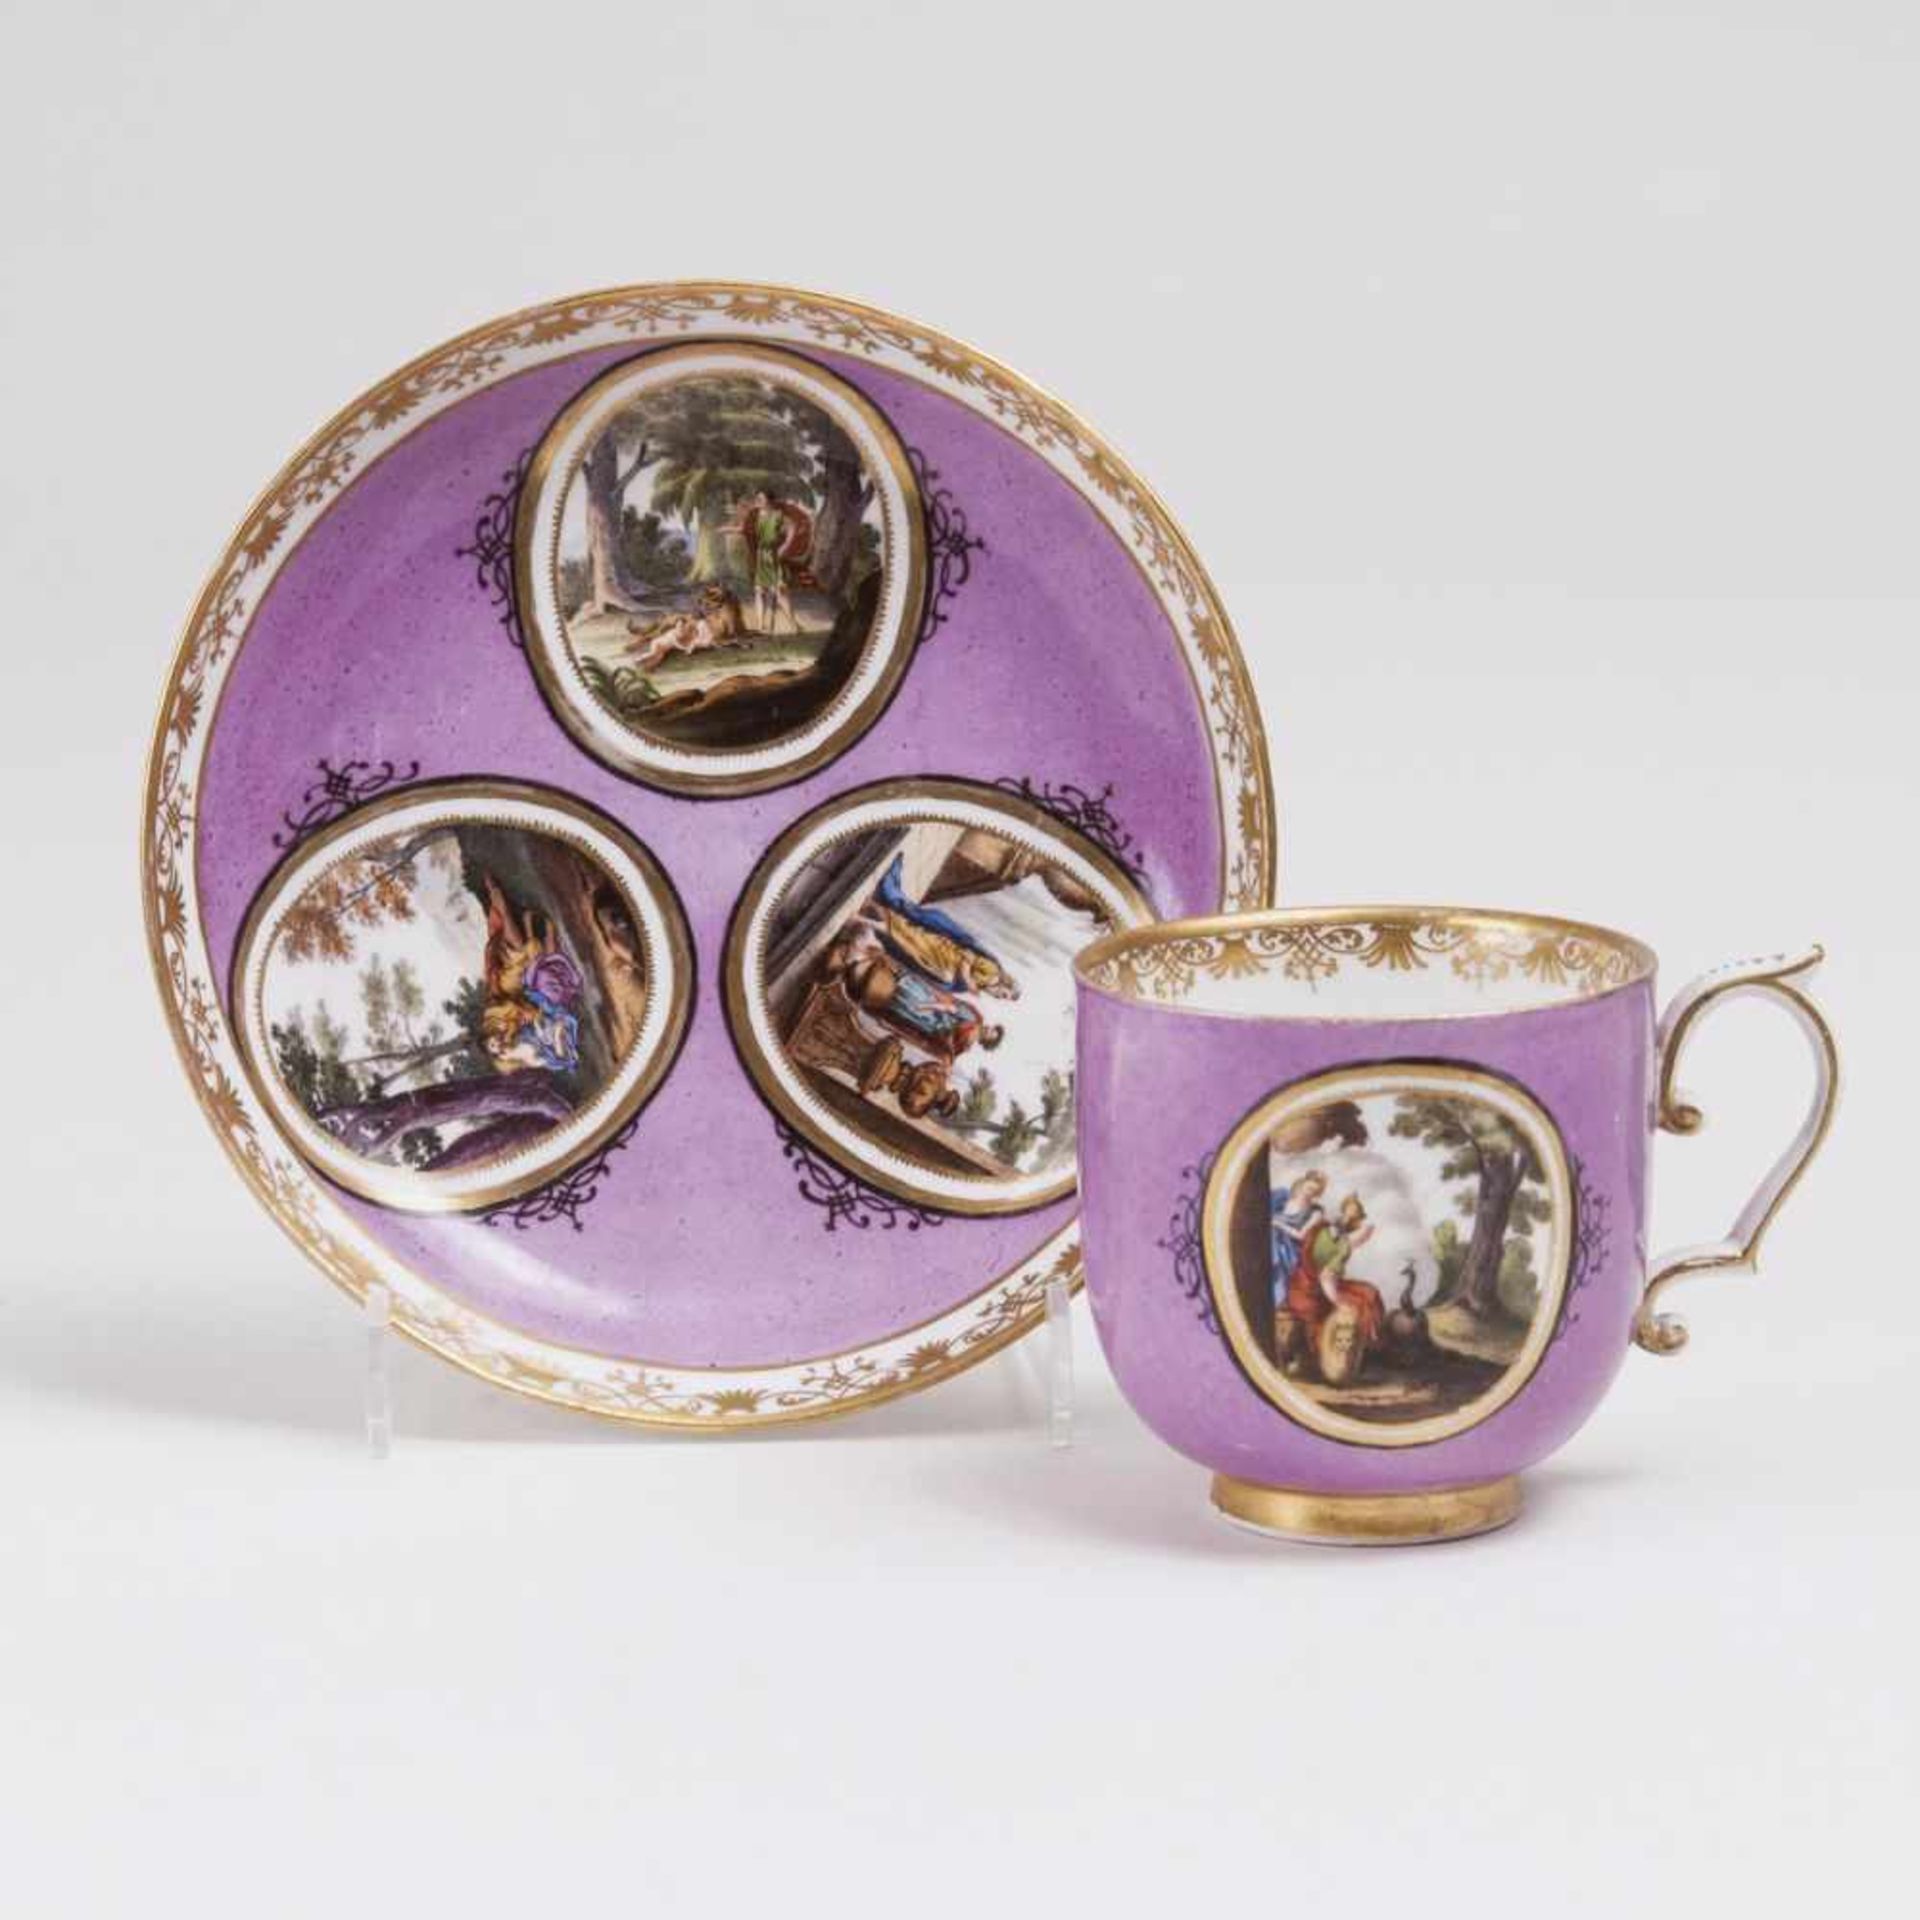 Tasse mit Purpurfond und mythologischen SzenenMeissen, 1736. Porzellan. Purpurfond. In gold-